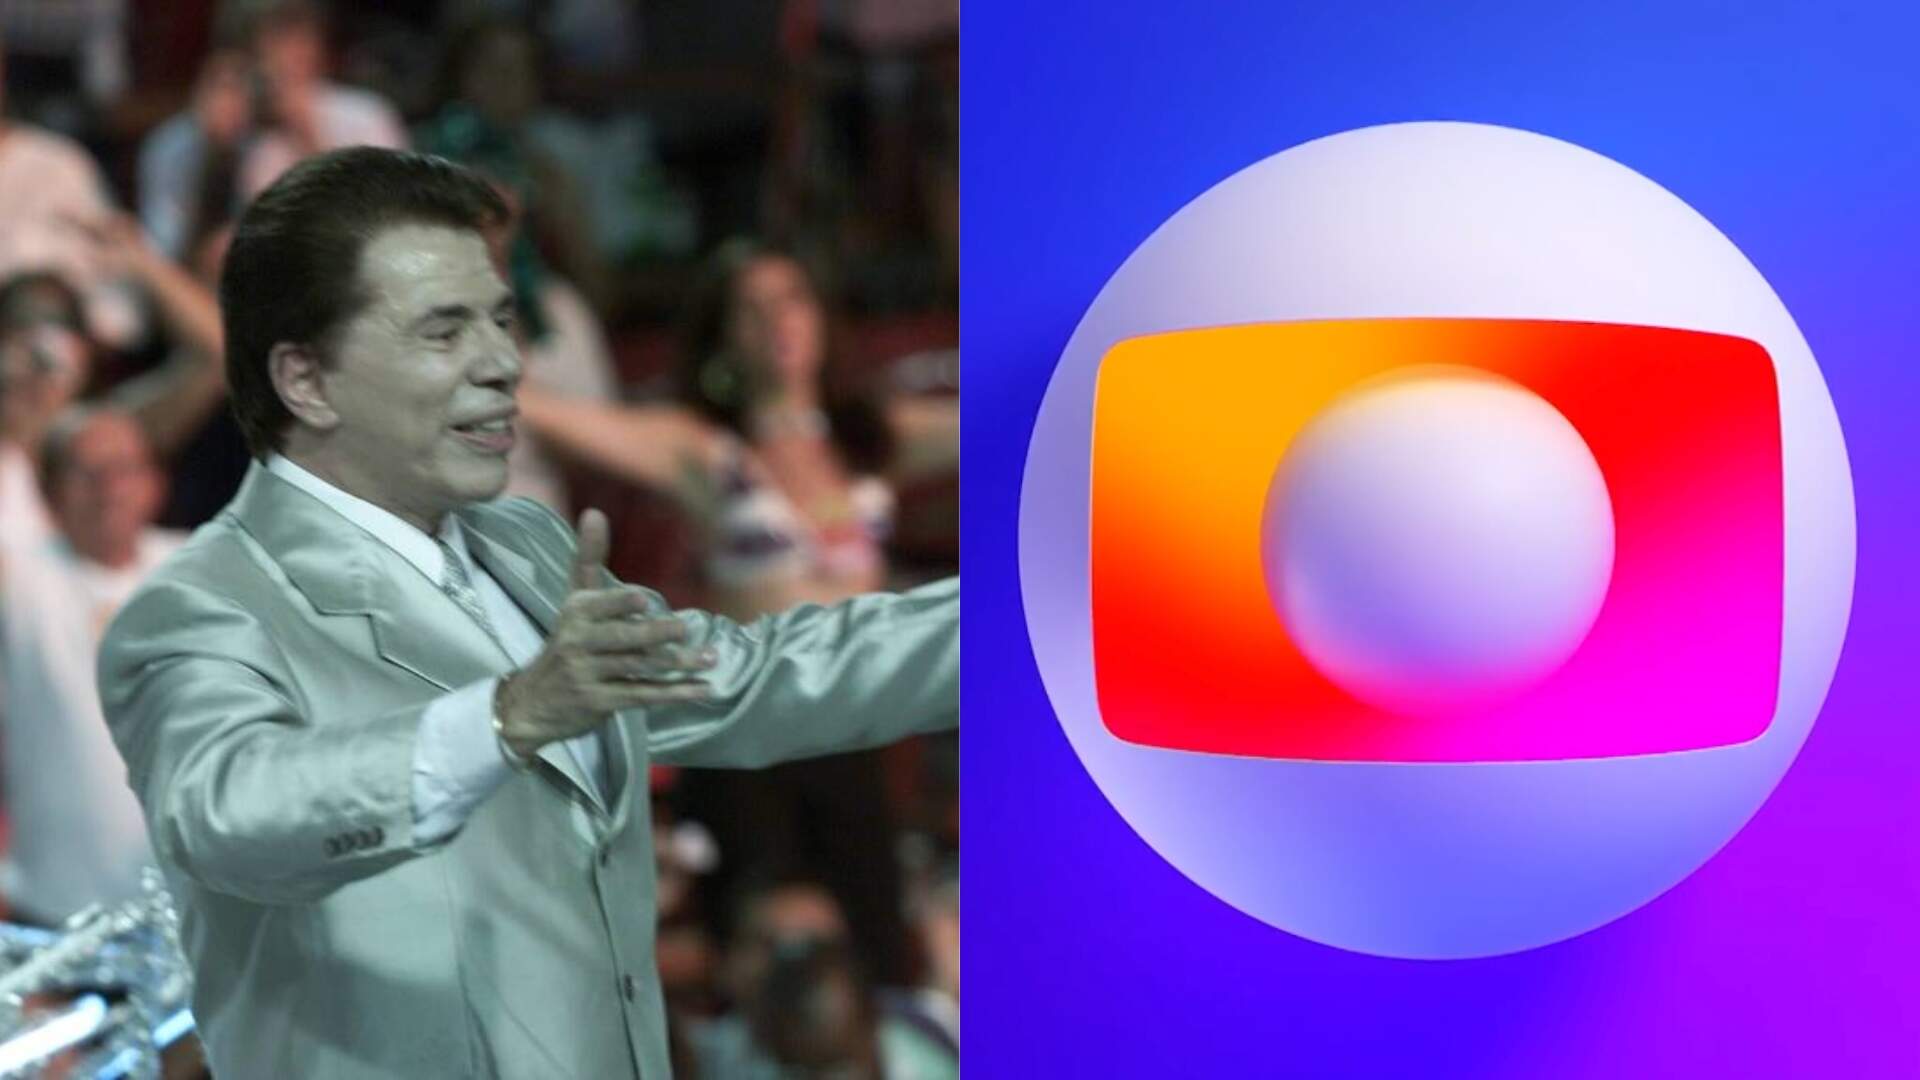 Deu ruim pro SBT? Globo toma decisão sobre Silvio Santos após exibição de imagens ‘roubadas’ do Carnaval - Metropolitana FM